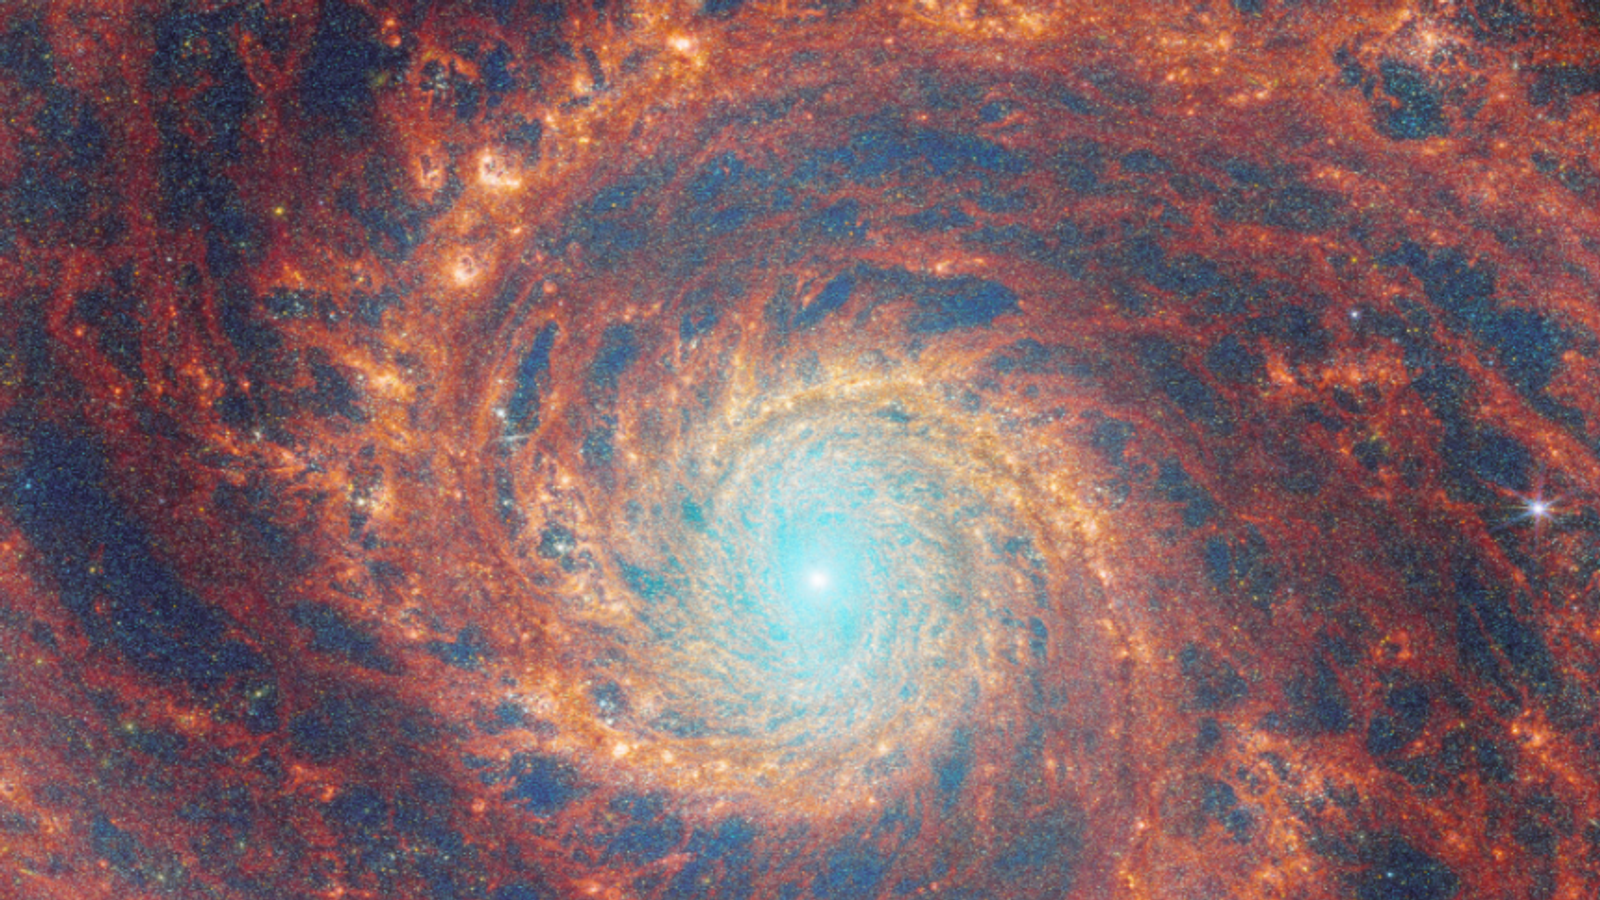 Космическият телескоп Джеймс Уеб улавя далечна водовъртежна галактика със зашеметяващи детайли в ново изображение